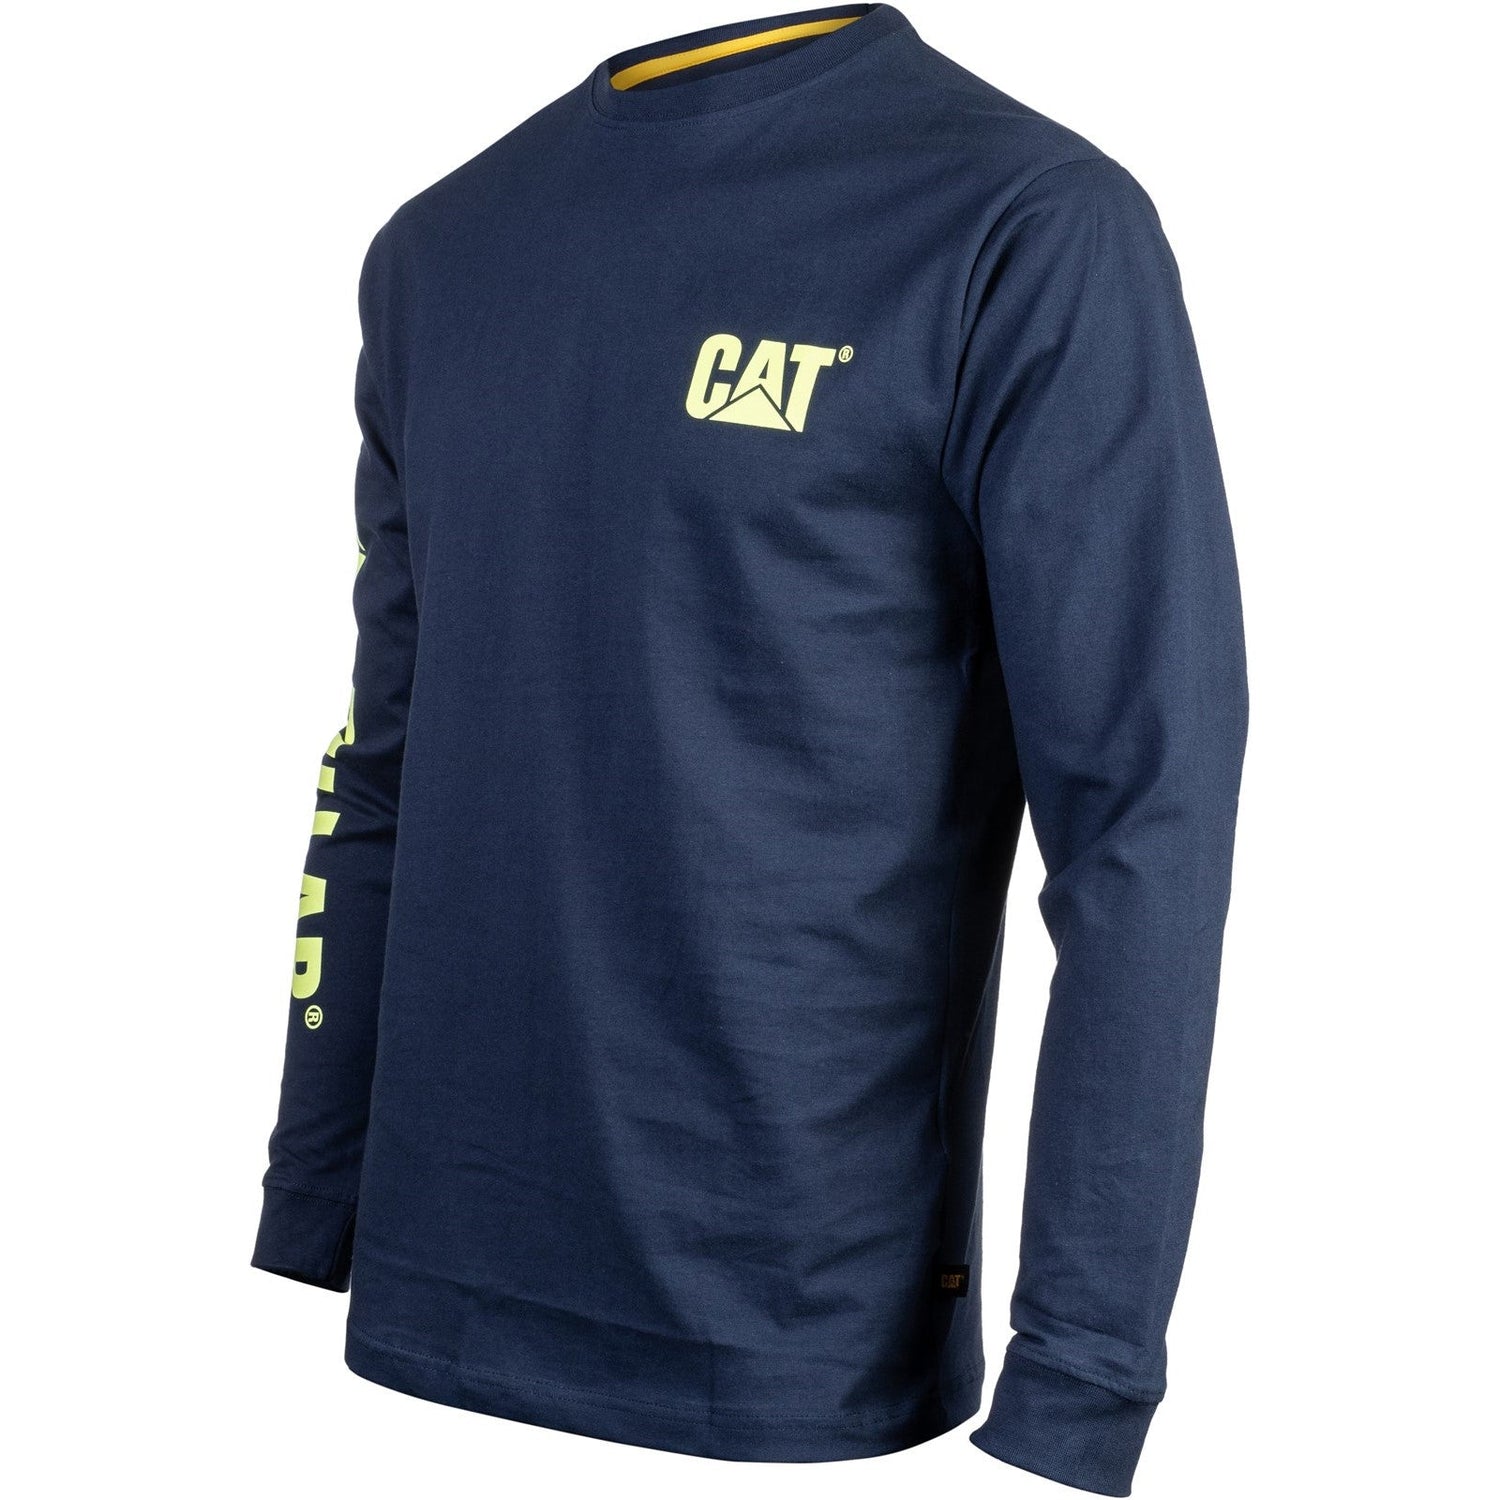 Caterpillar Trademark Banner Long Sleeve T Shirt in Blue/Yellow 